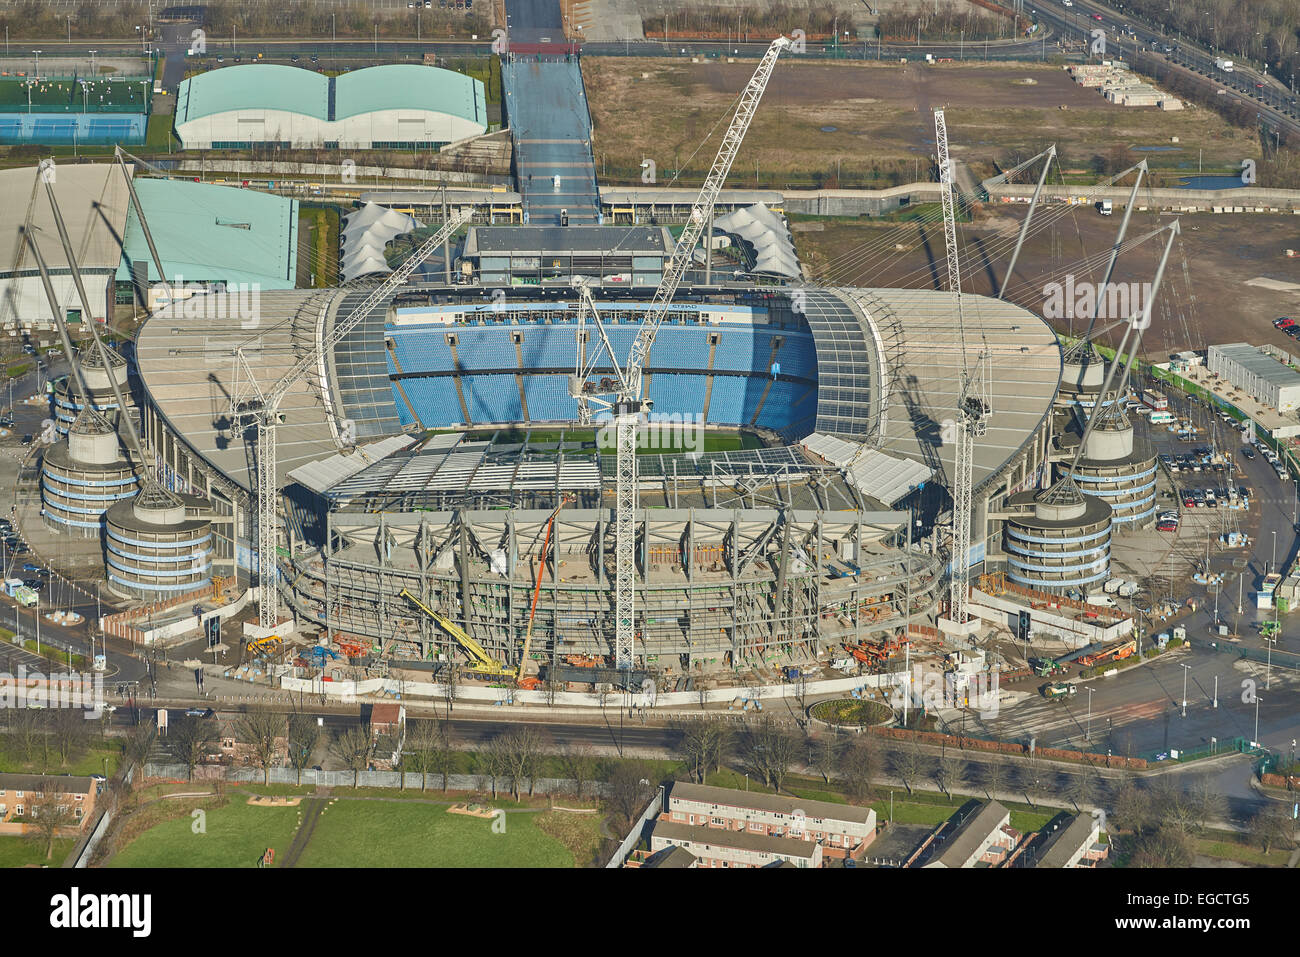 Fotografía aérea del Etihad Stadium, Manchester City Football Club Foto de stock